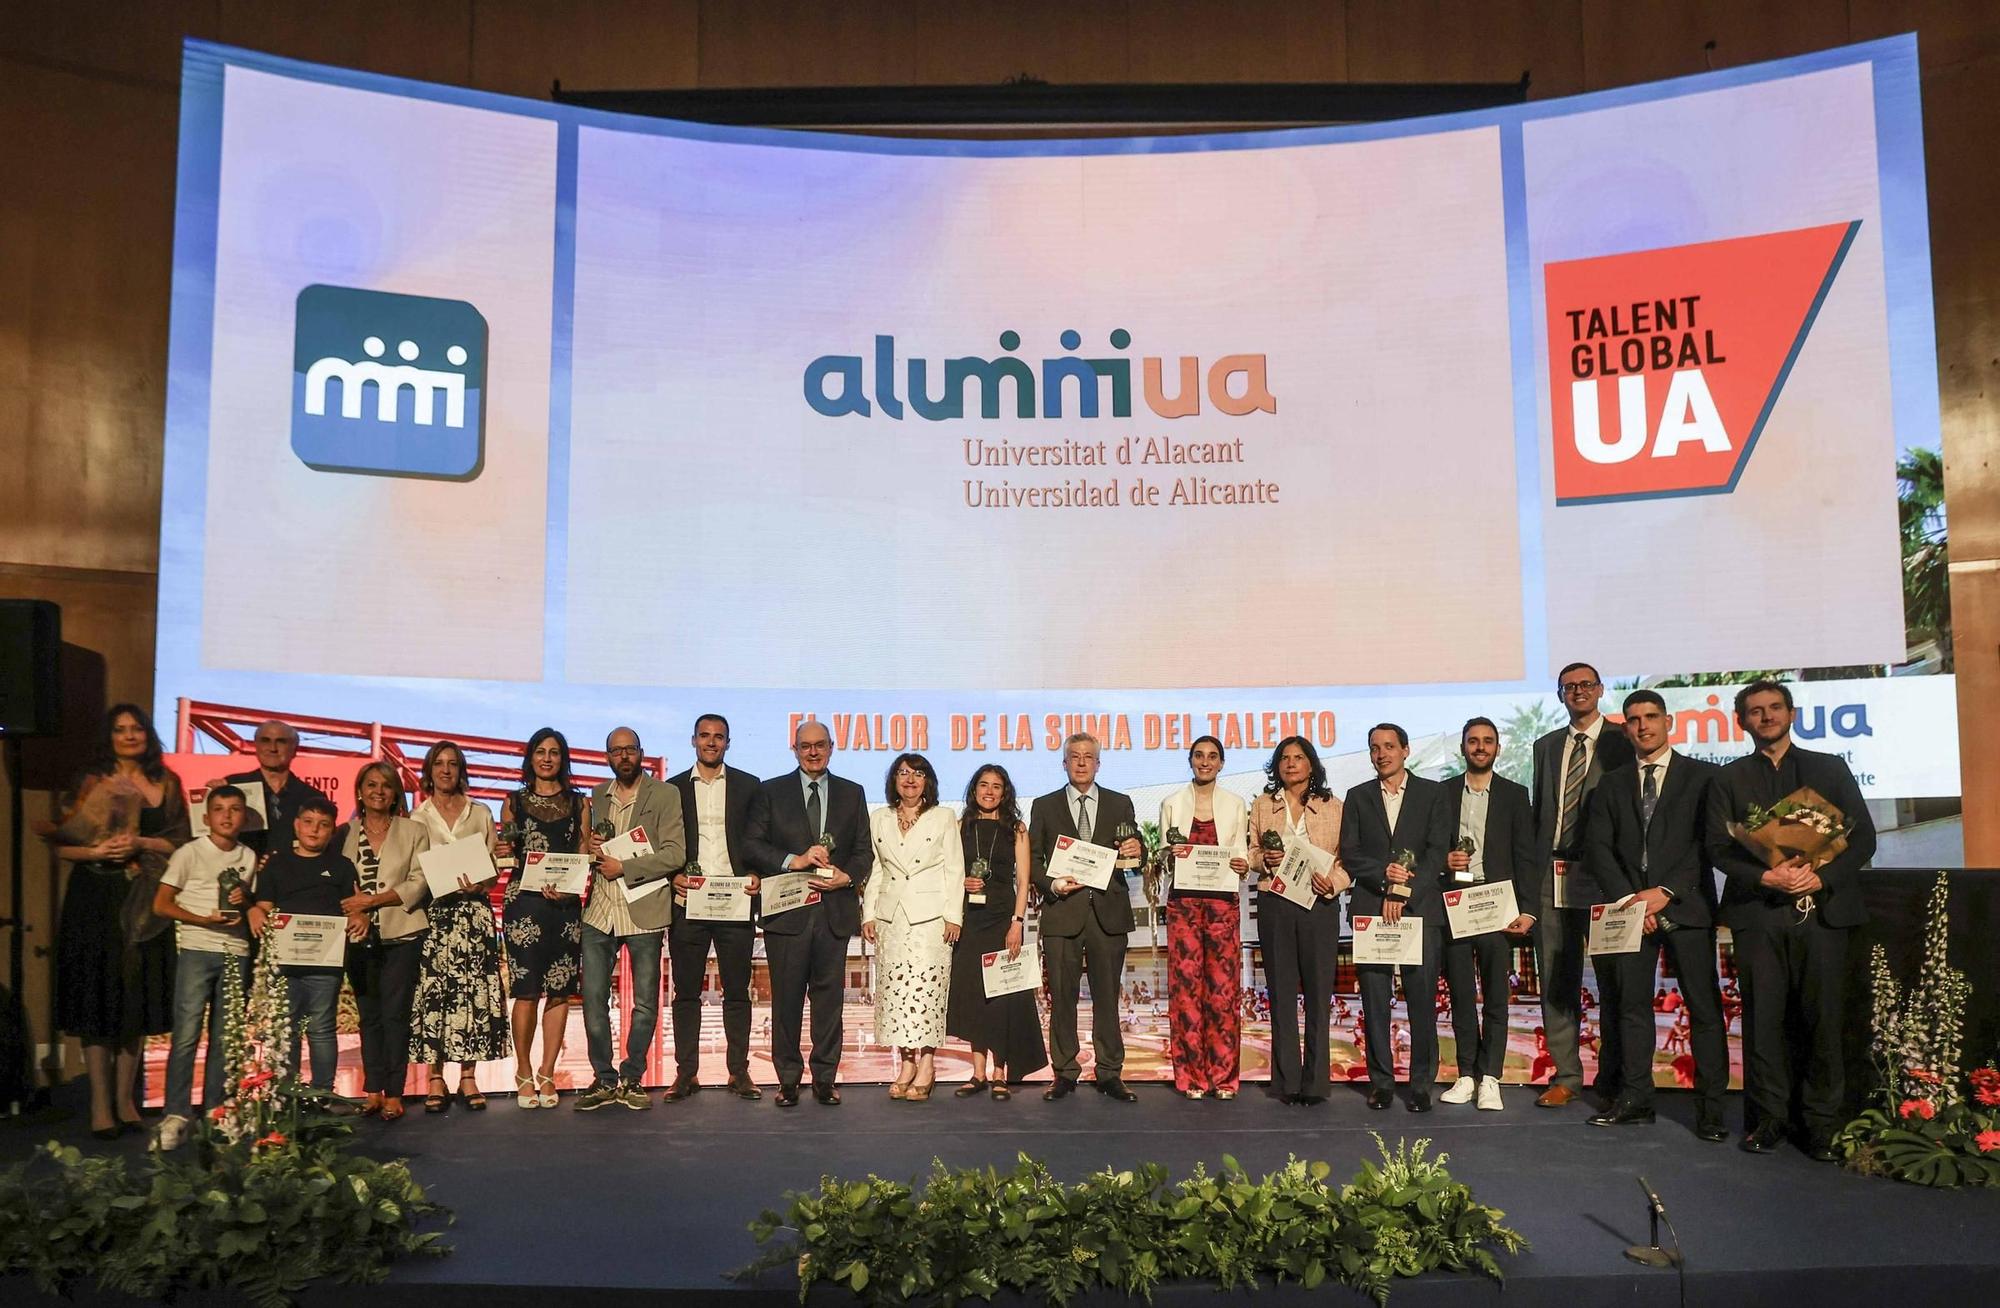 La Universidad de Alicante distingue a antiguos alumnos convertidos en referentes en la III Gala Alumni “Talento Global UA”